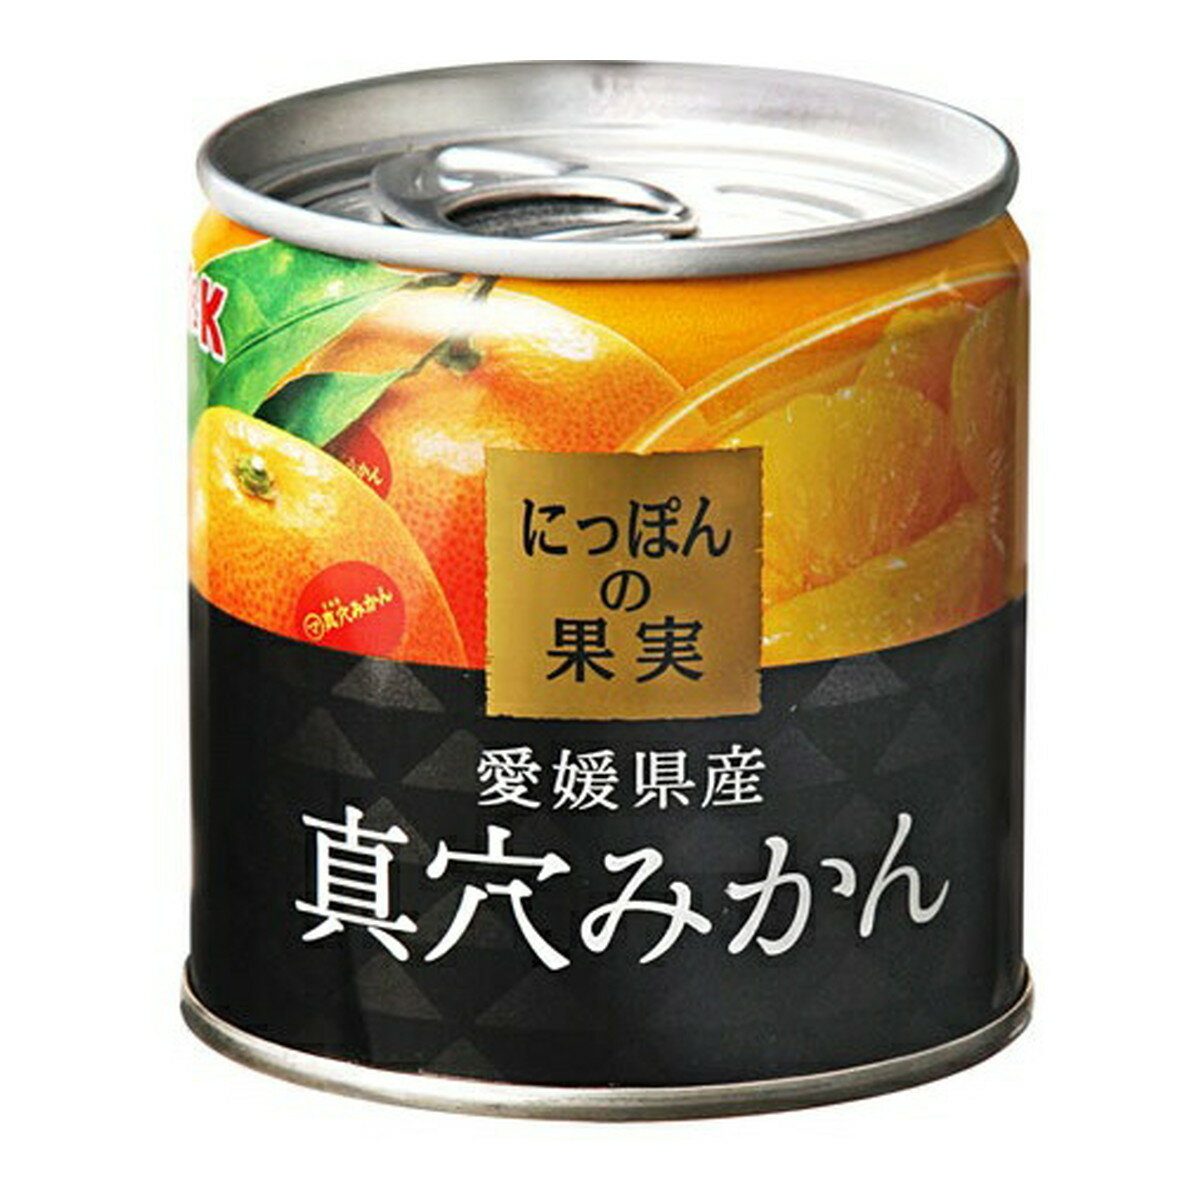 【送料込・まとめ買い×4個セット】KK にっぽんの果実 愛媛県産 真穴みかん 缶詰